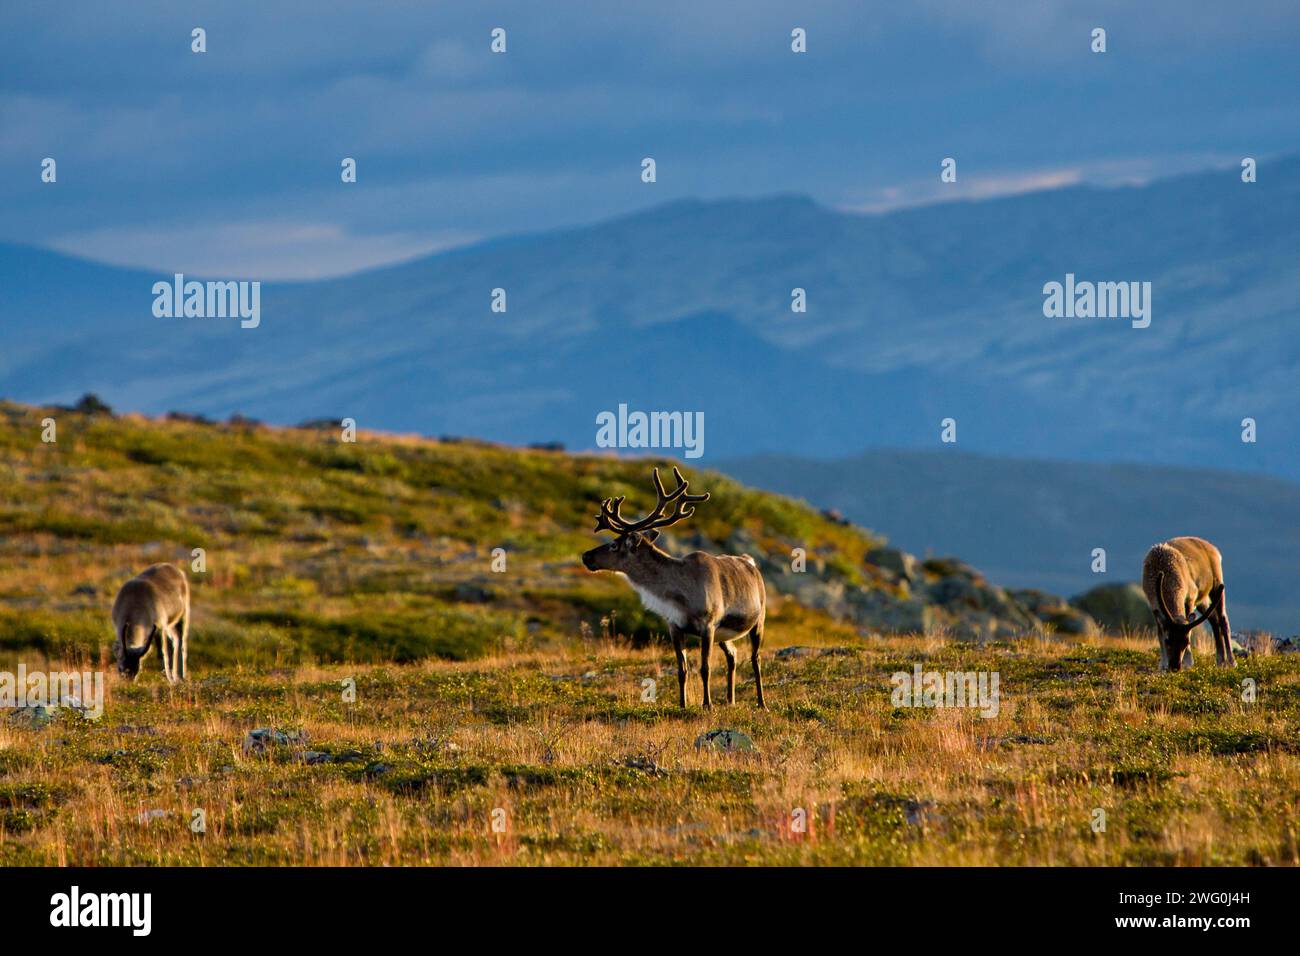 Une lumière matinale illumine les rennes dans le parc national norvégien de Jotunheimen. Banque D'Images